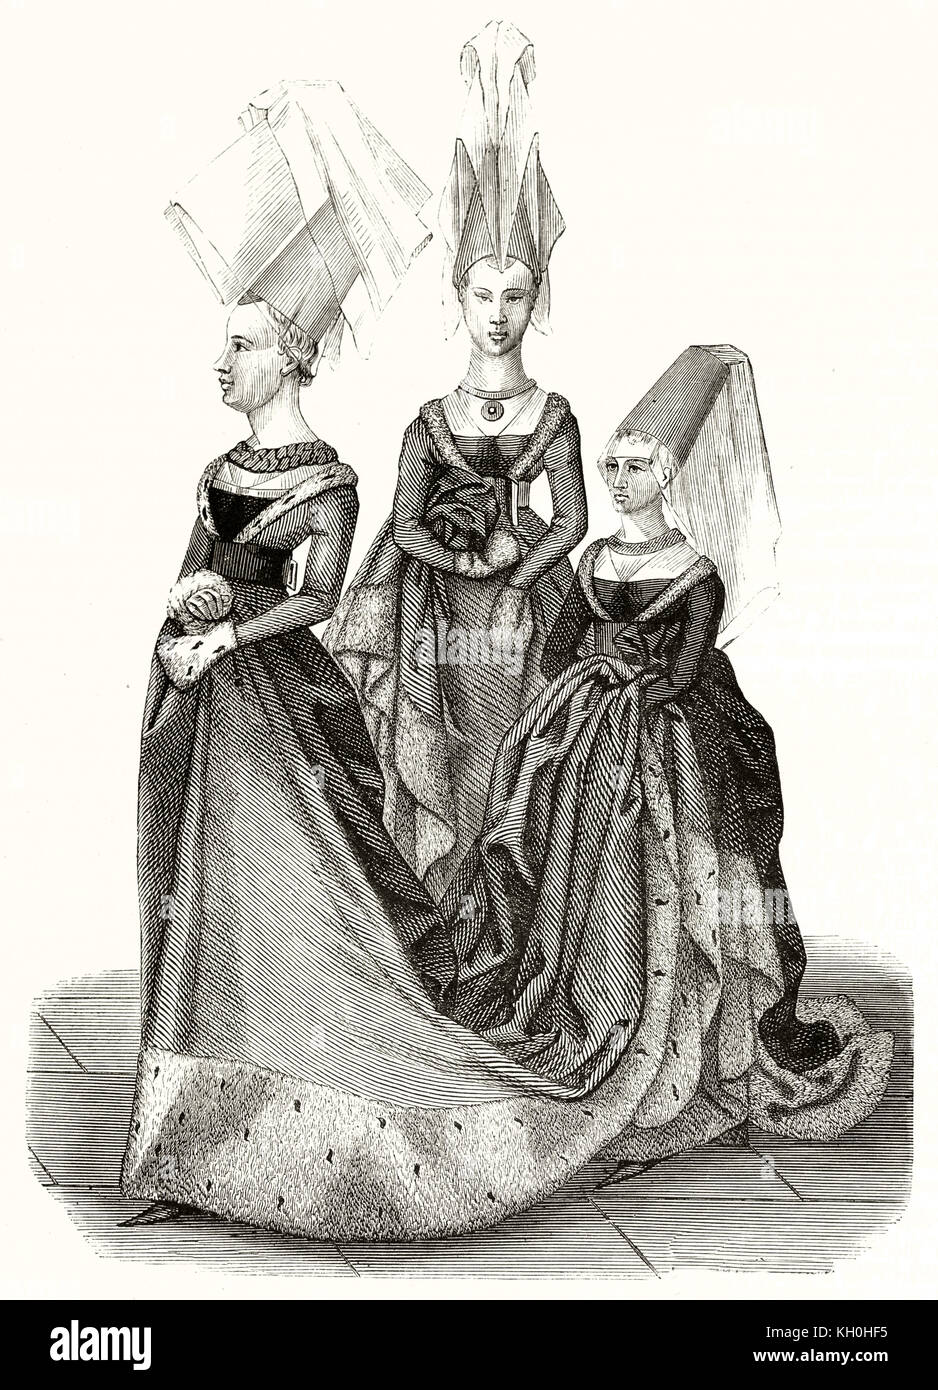 Vecchia illustrazione della principessa e le donne in età di Carlo VII. Dopo il torneo Libro di René d'Anjou, publ. su Magasin pittoresco, Parigi, 1847 Foto Stock